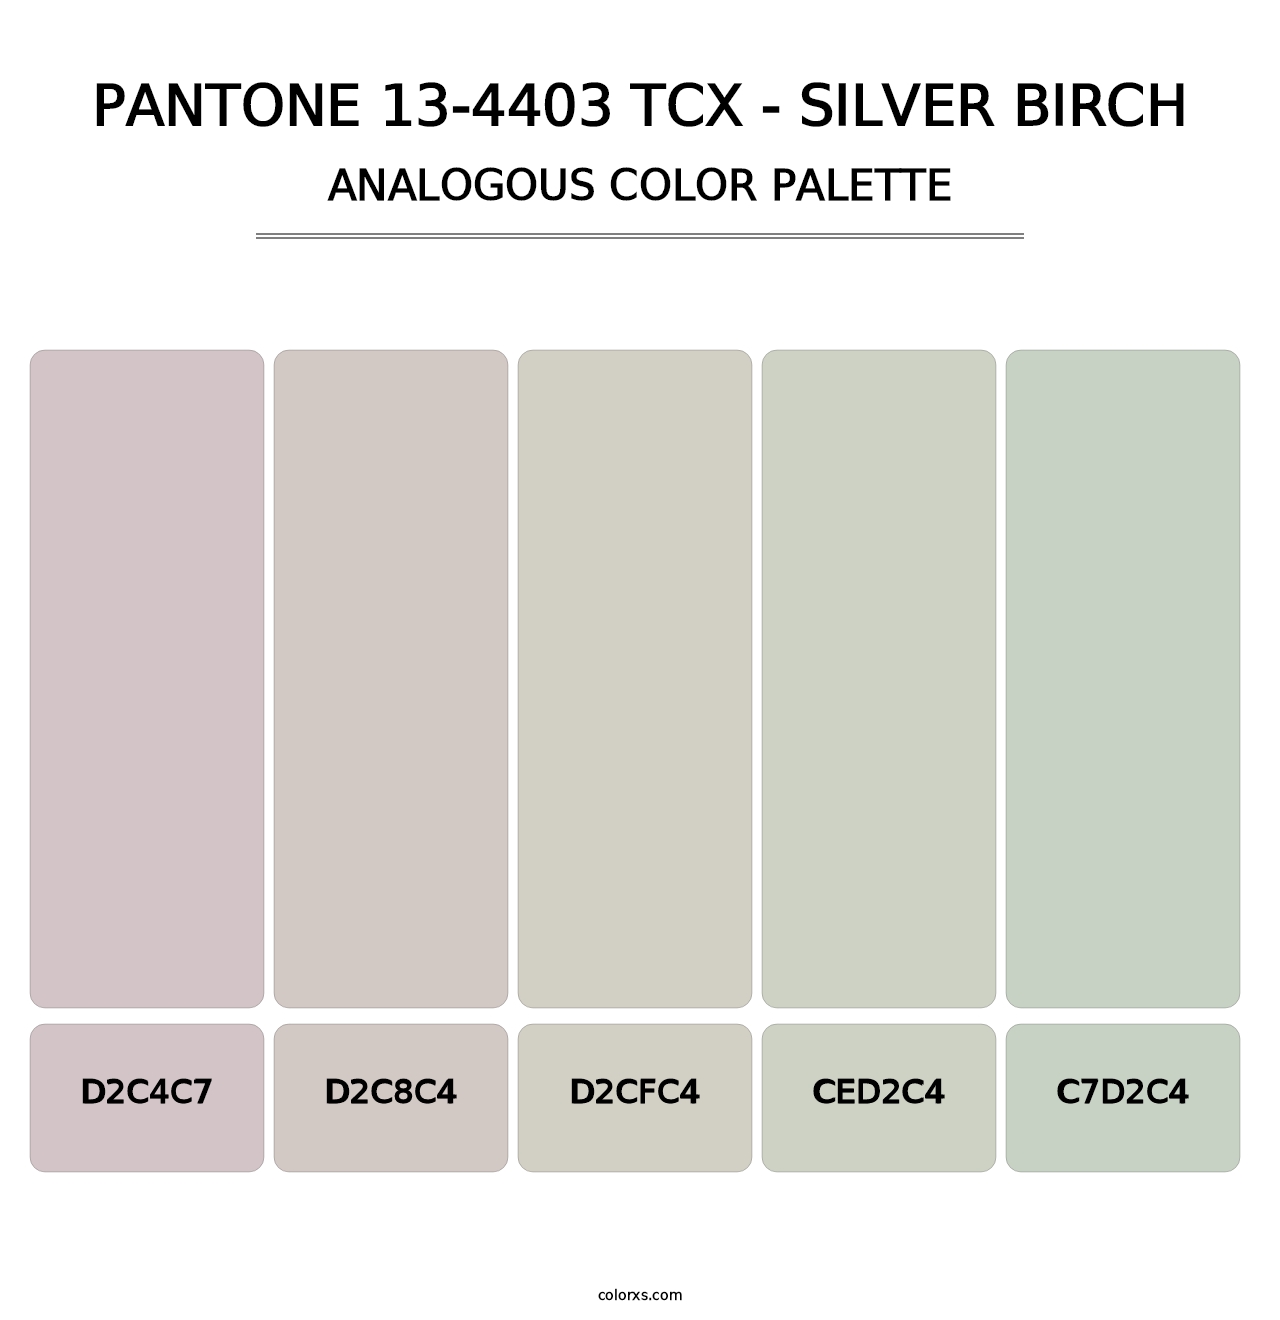 PANTONE 13-4403 TCX - Silver Birch - Analogous Color Palette